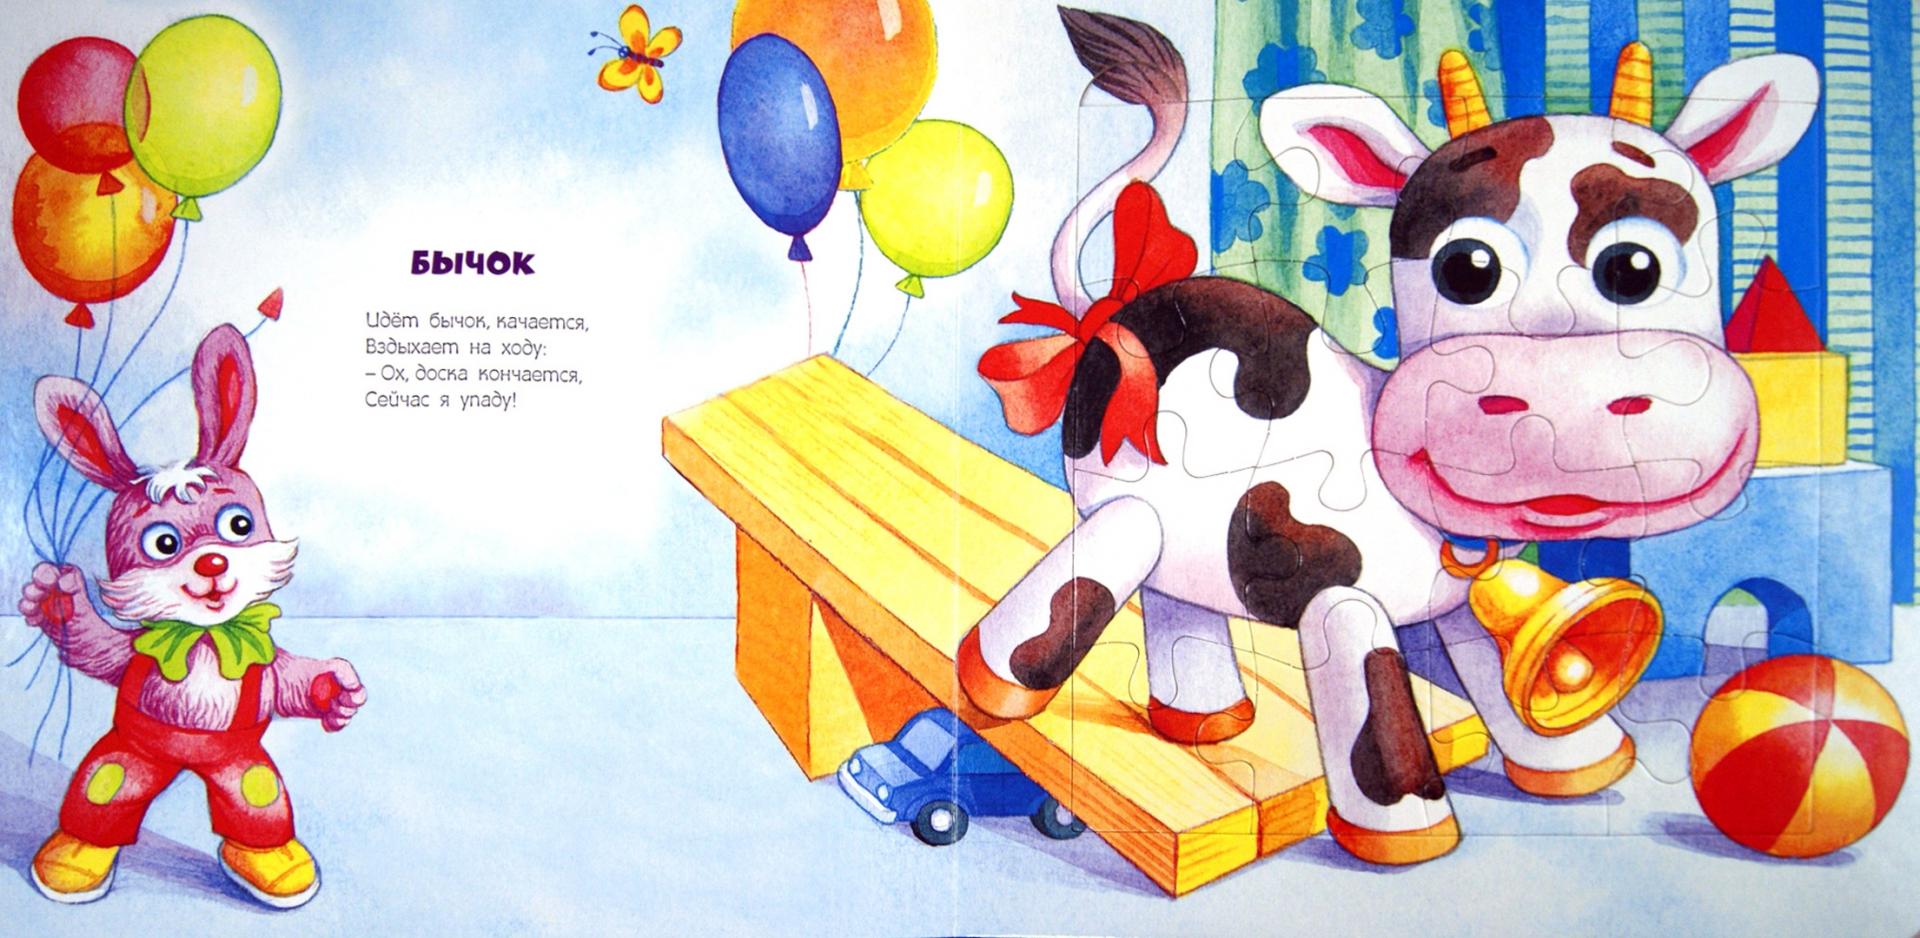 Иллюстрация 1 из 8 для Игрушки. 12 пазлов внутри - Агния Барто | Лабиринт - игрушки. Источник: Лабиринт